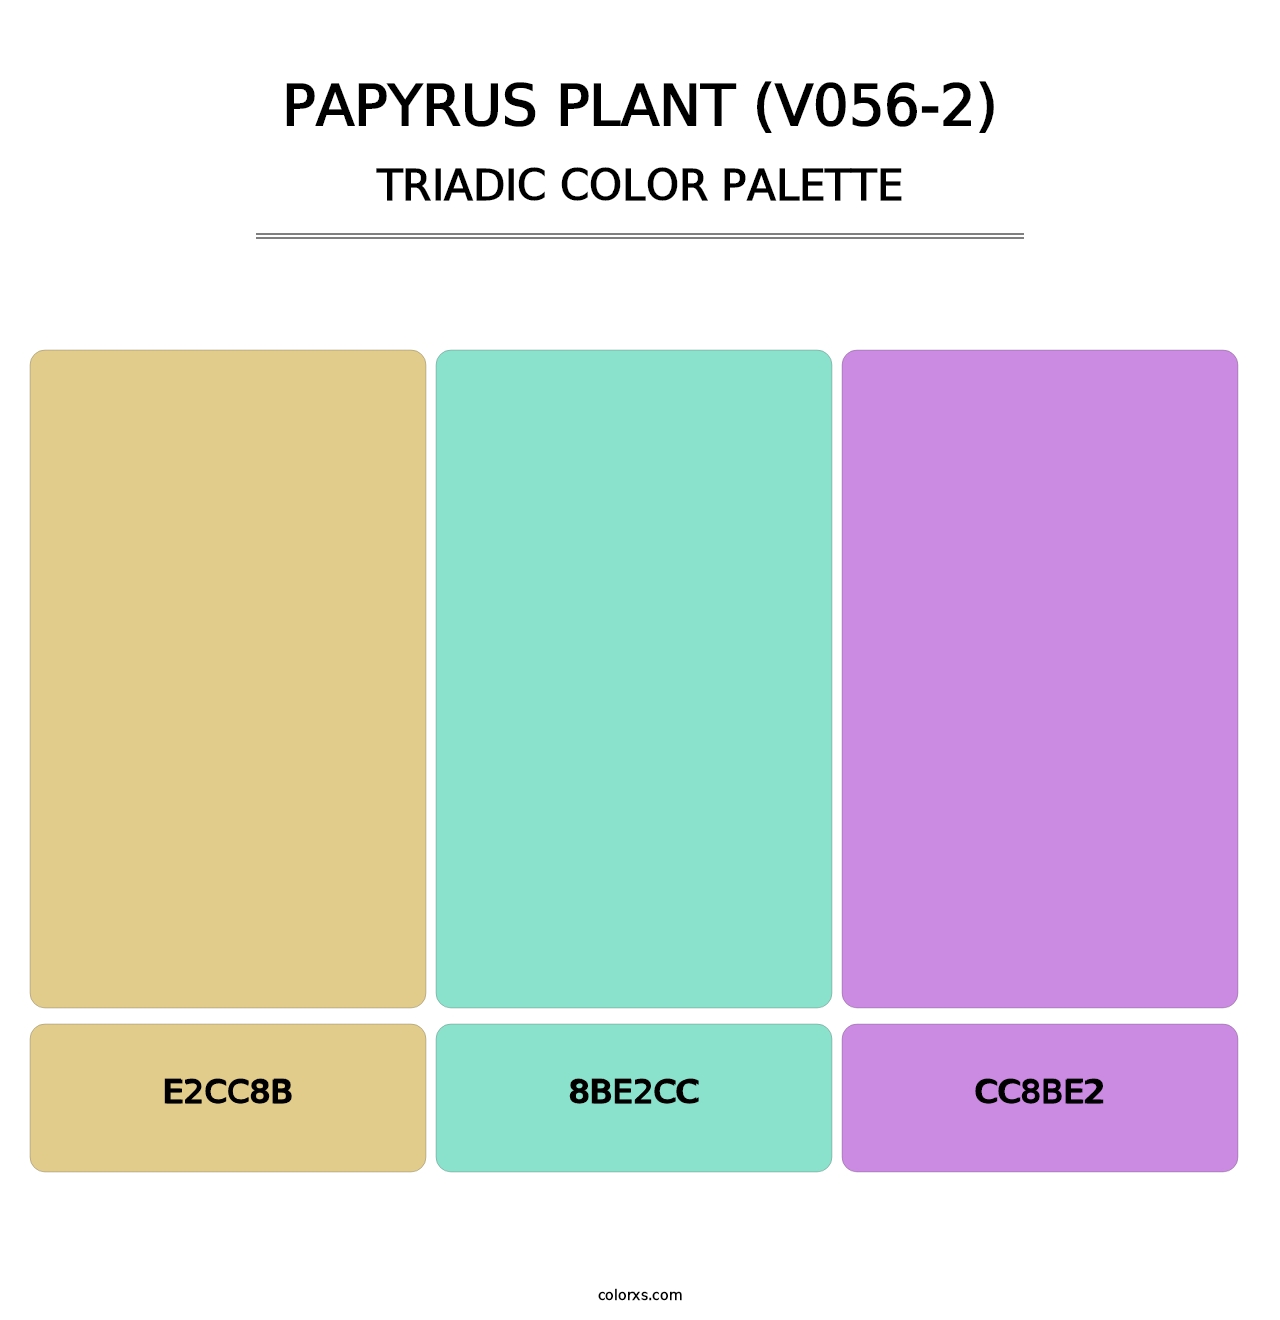 Papyrus Plant (V056-2) - Triadic Color Palette